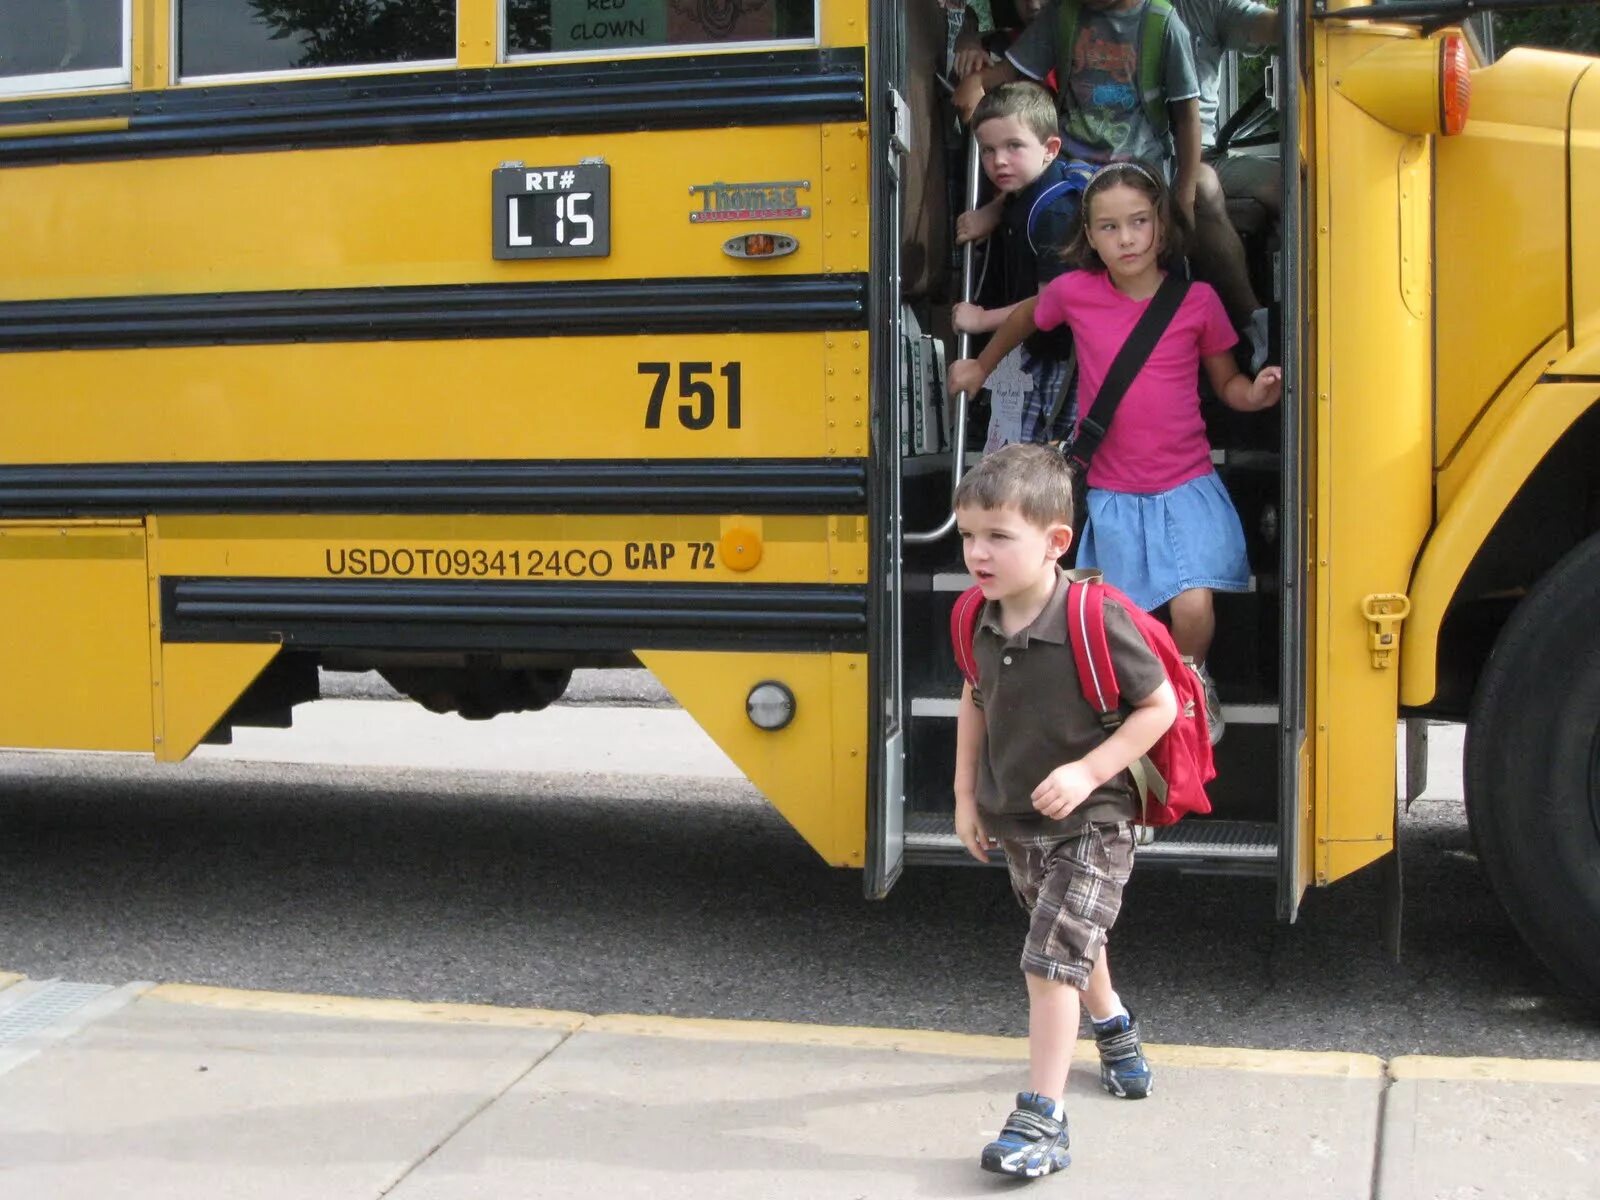 Выходить из автобуса. Лети выходят из автобуса. Дети виходят из автобус. Девушка выходит из автобуса. Get off the train